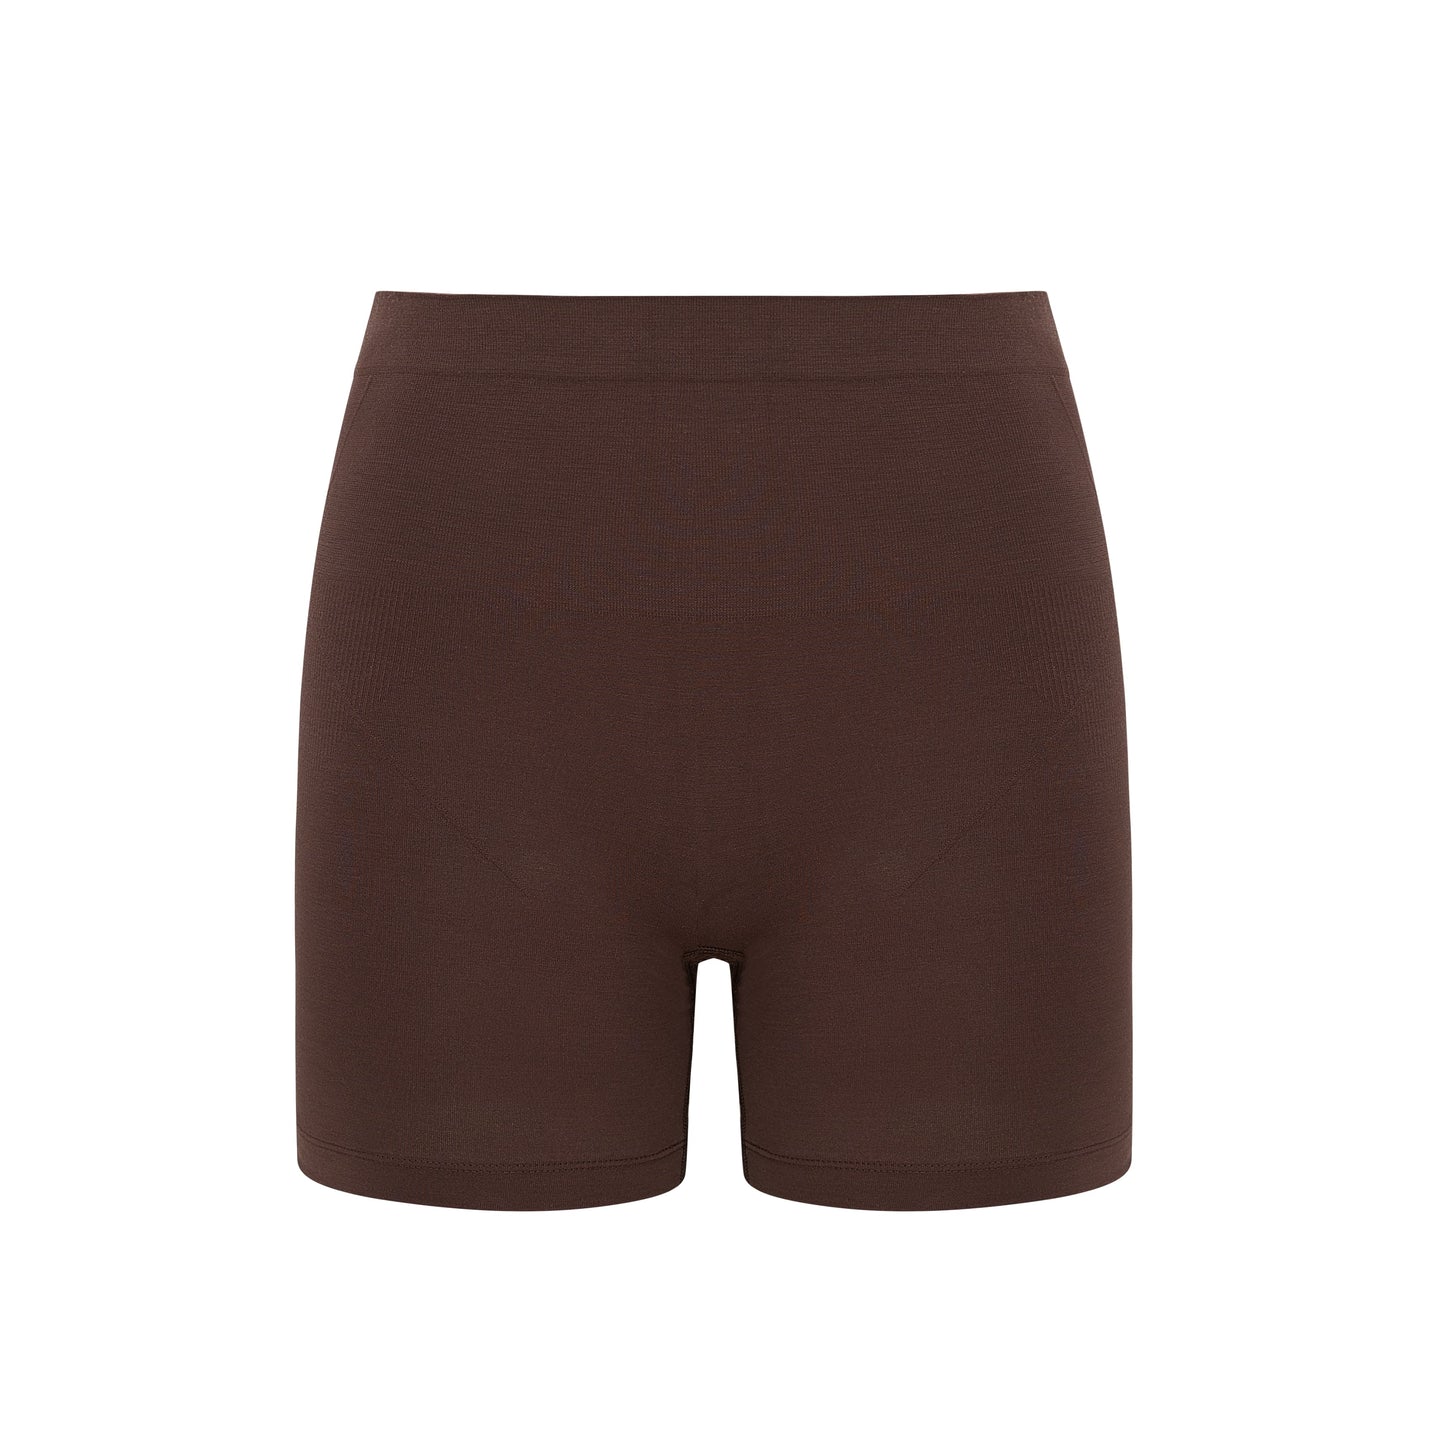 flat lay image of brown shorts